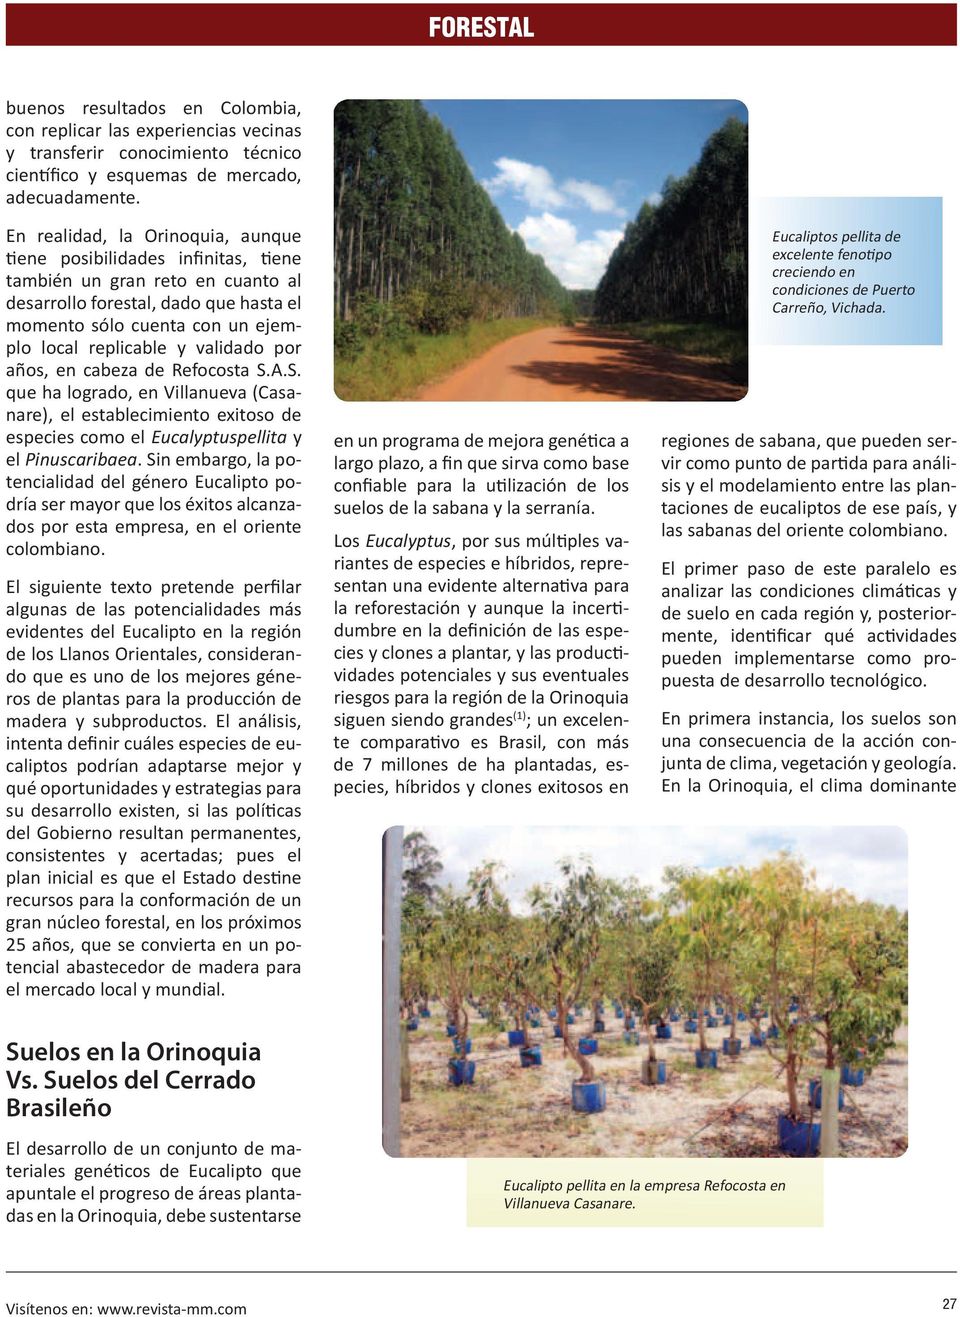 validado por años, en cabeza de Refocosta S.A.S. que ha logrado, en Villanueva (Casanare), el establecimiento exitoso de especies como el Eucalyptuspellita y el Pinuscaribaea.